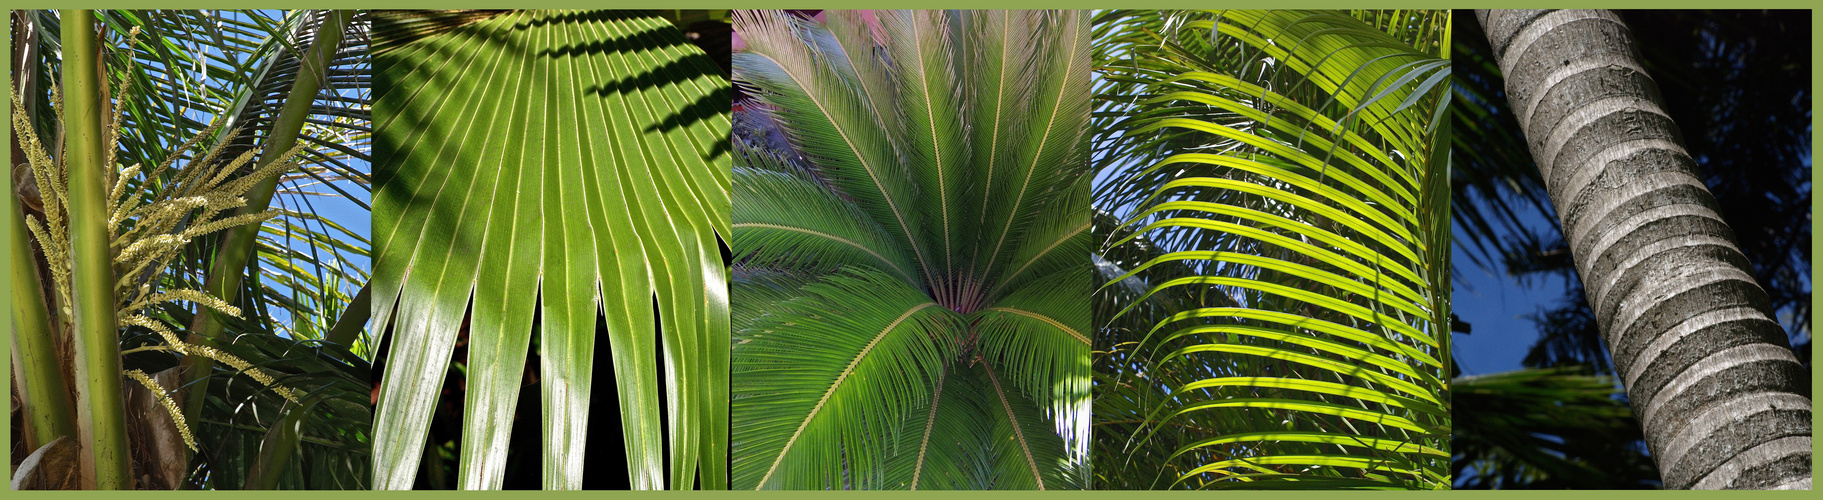 Le palmier dans tous ses états -- Variationen des Palmenbaumes